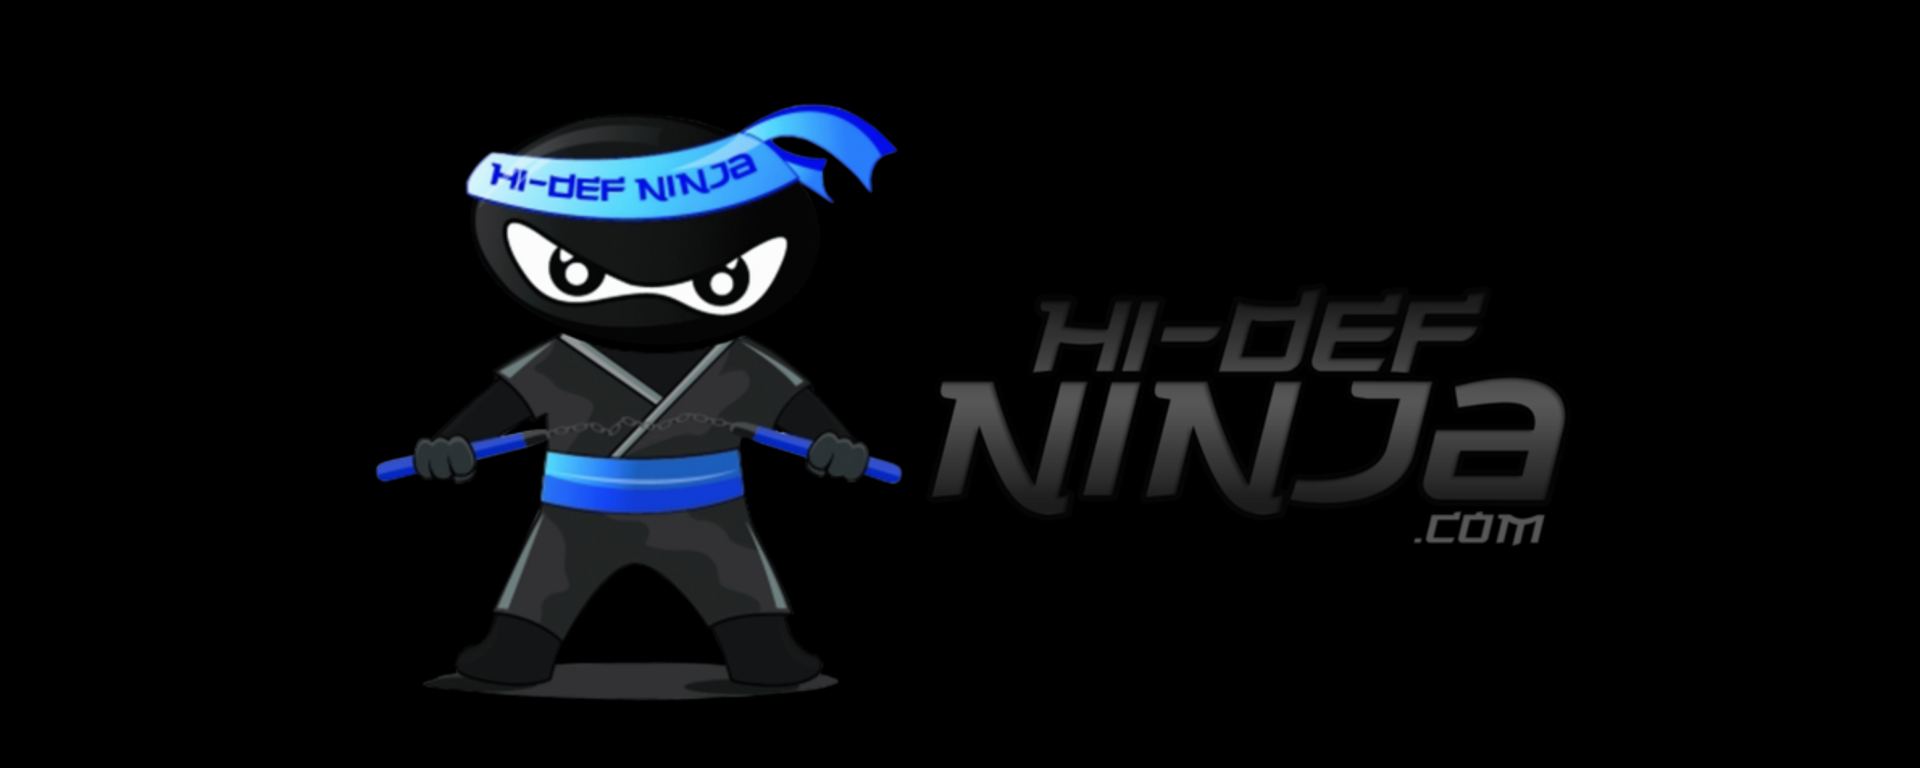 Ninja Week Begins on February 3, 2014!